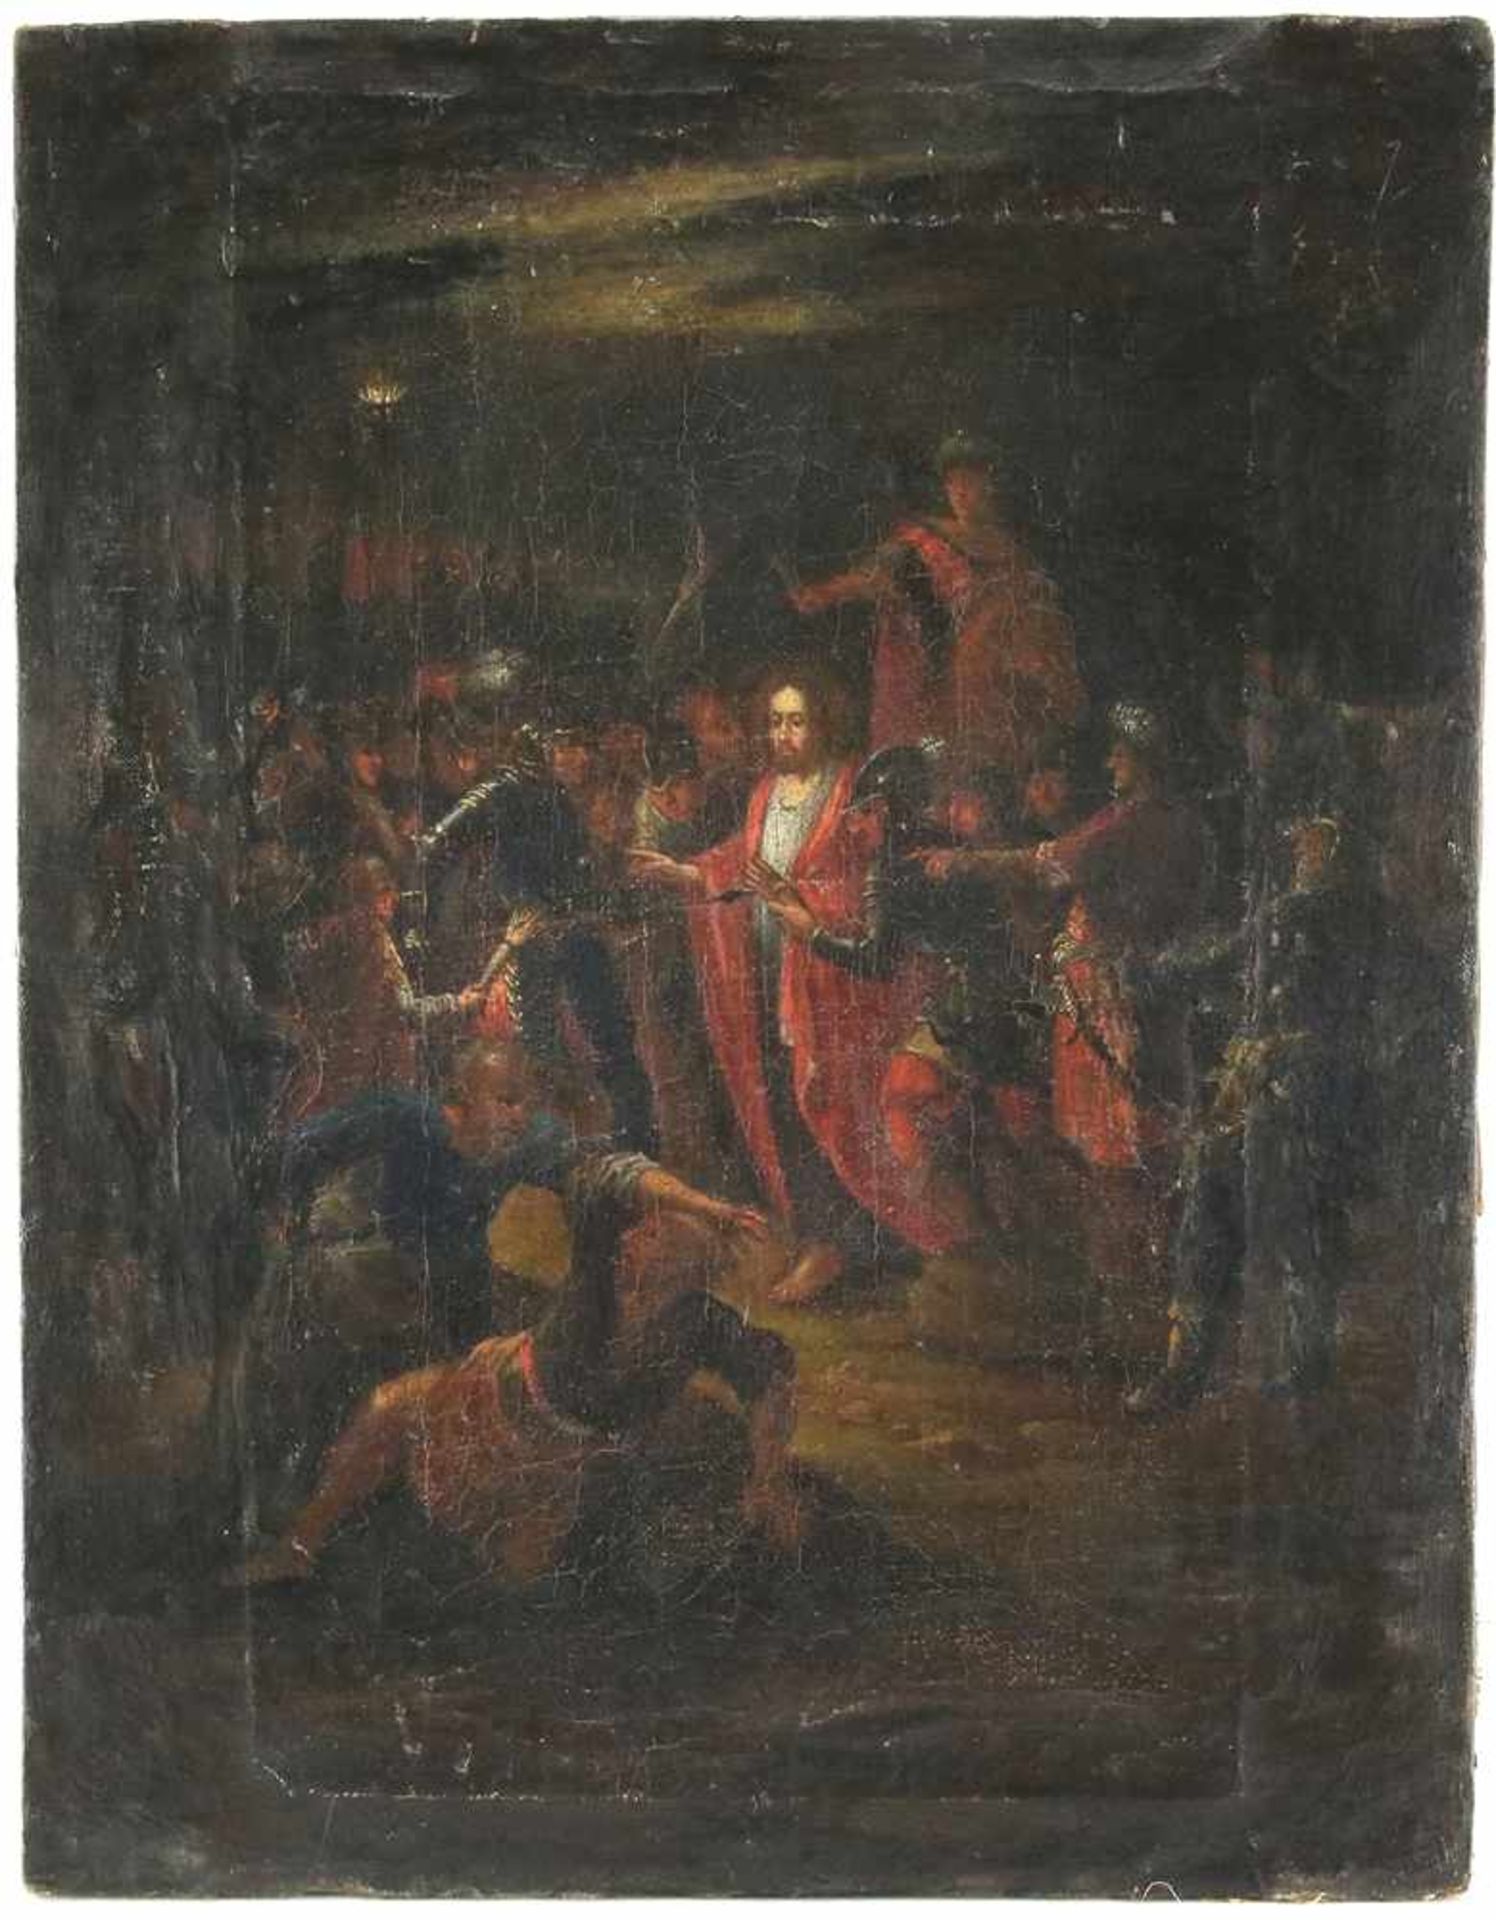 Süddeutscher Altmeister17. Jh. Jesu Gefangennahme im Garten Gethsemane. Vielfigurige Szene mit der